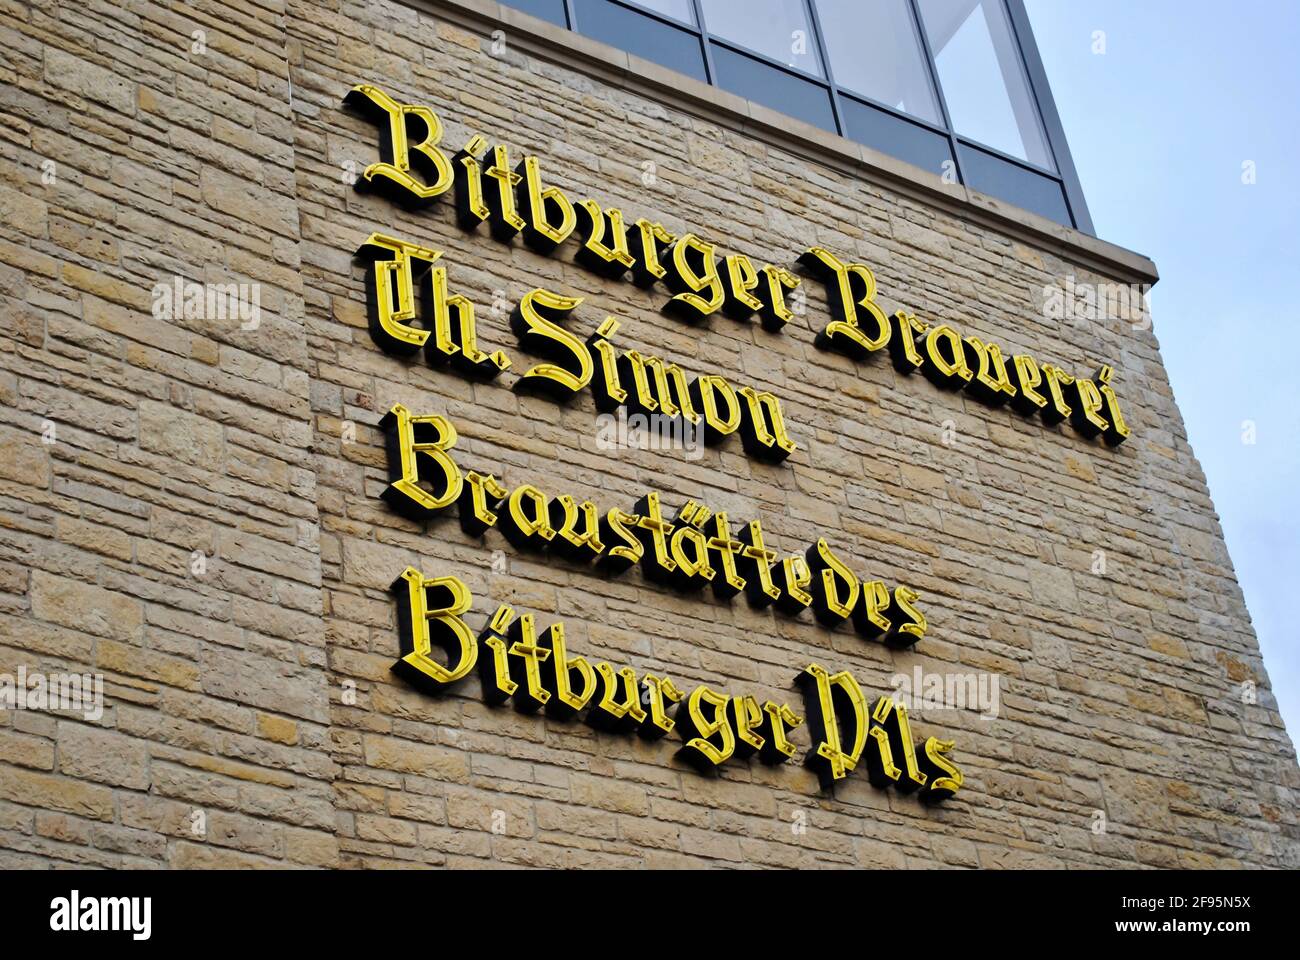 Bitburg, Germany: Bitburger Brewery (Bitburger Brauerei) exterior. Signage reads 'Bitburger Brewery Th. Simon Company Brewing Bitbuger Pils' Stock Photo